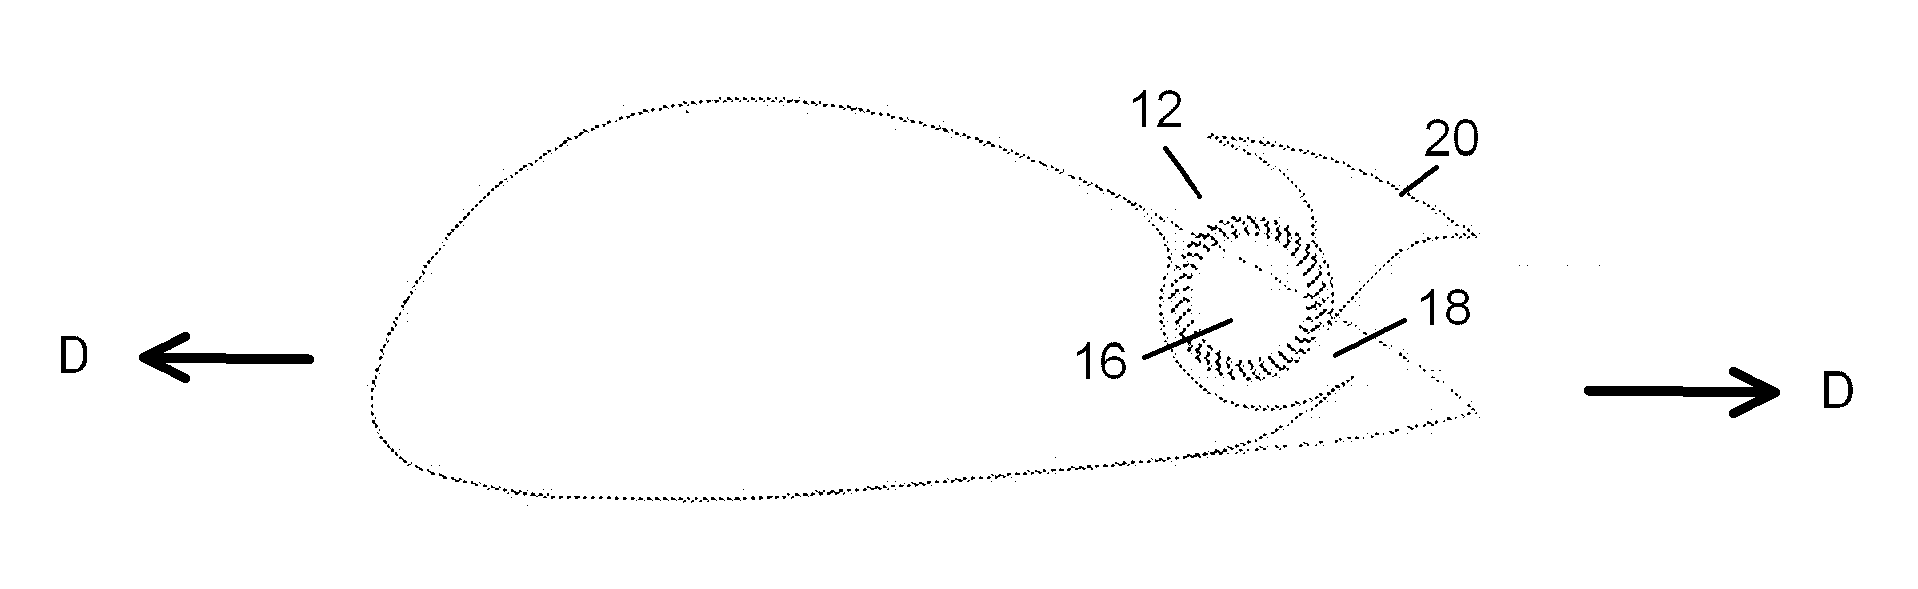 Cross-flow fan propulsion system